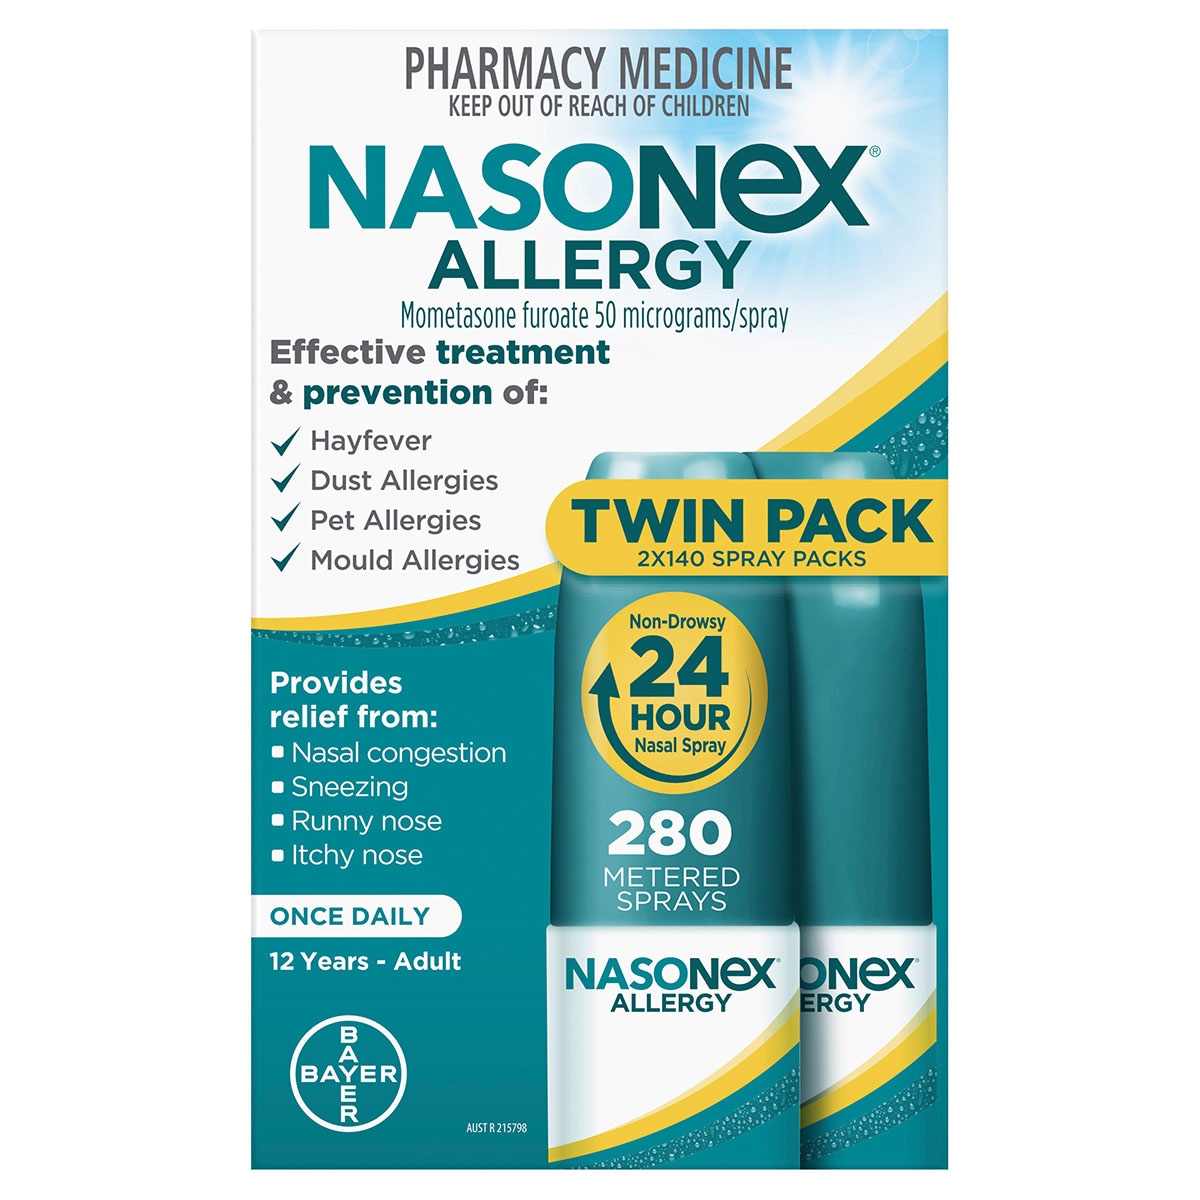 Nasonex Allergy Non-Drowsy 24 Hour Nasal Spray 2 x 140 Metered Sprays